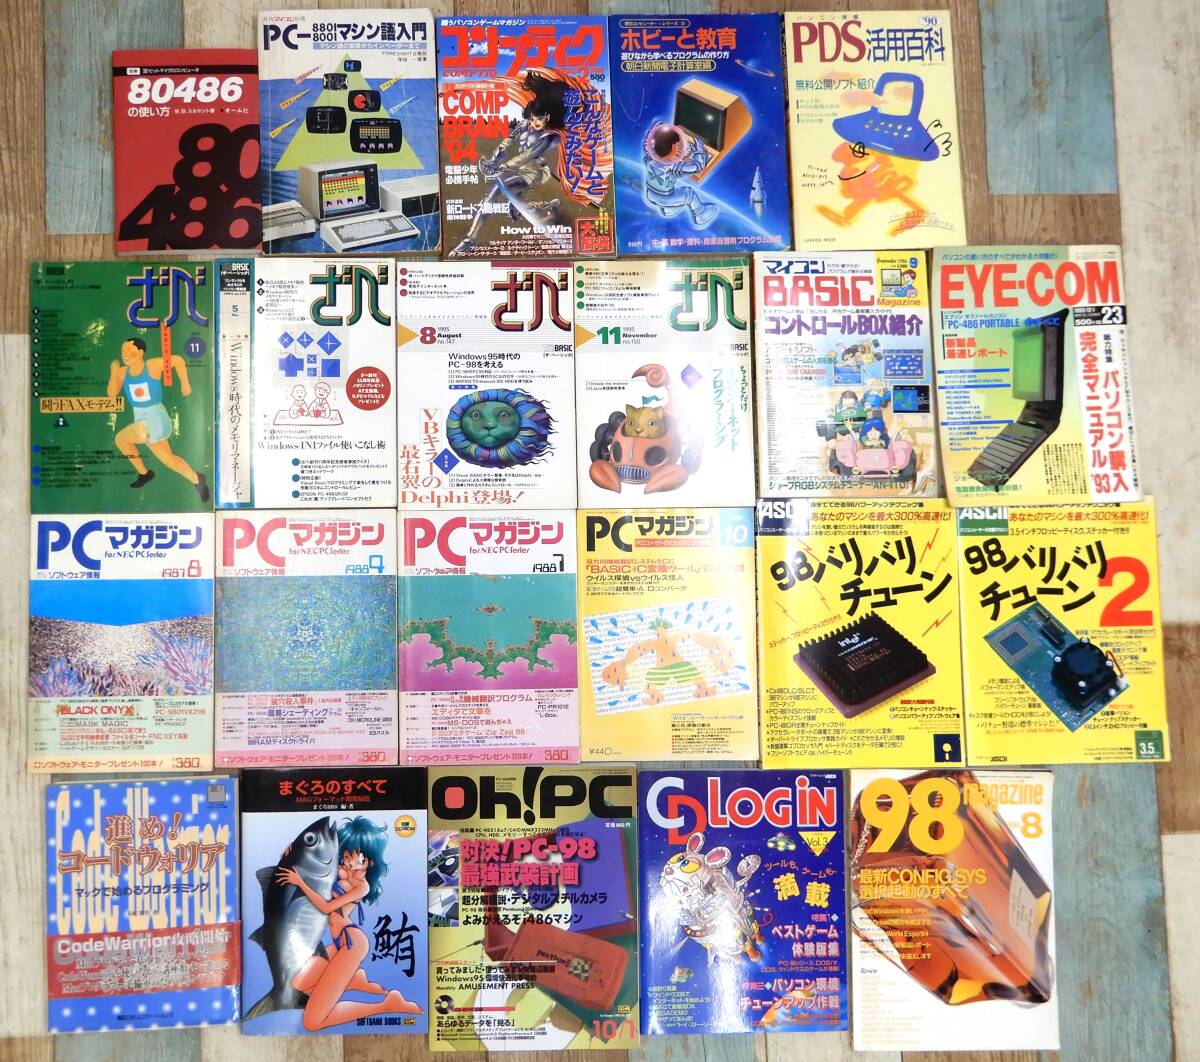 KS58/ персональный компьютер PC журнал продажа комплектом 22 шт. / PC журнал ..PC-98 program 